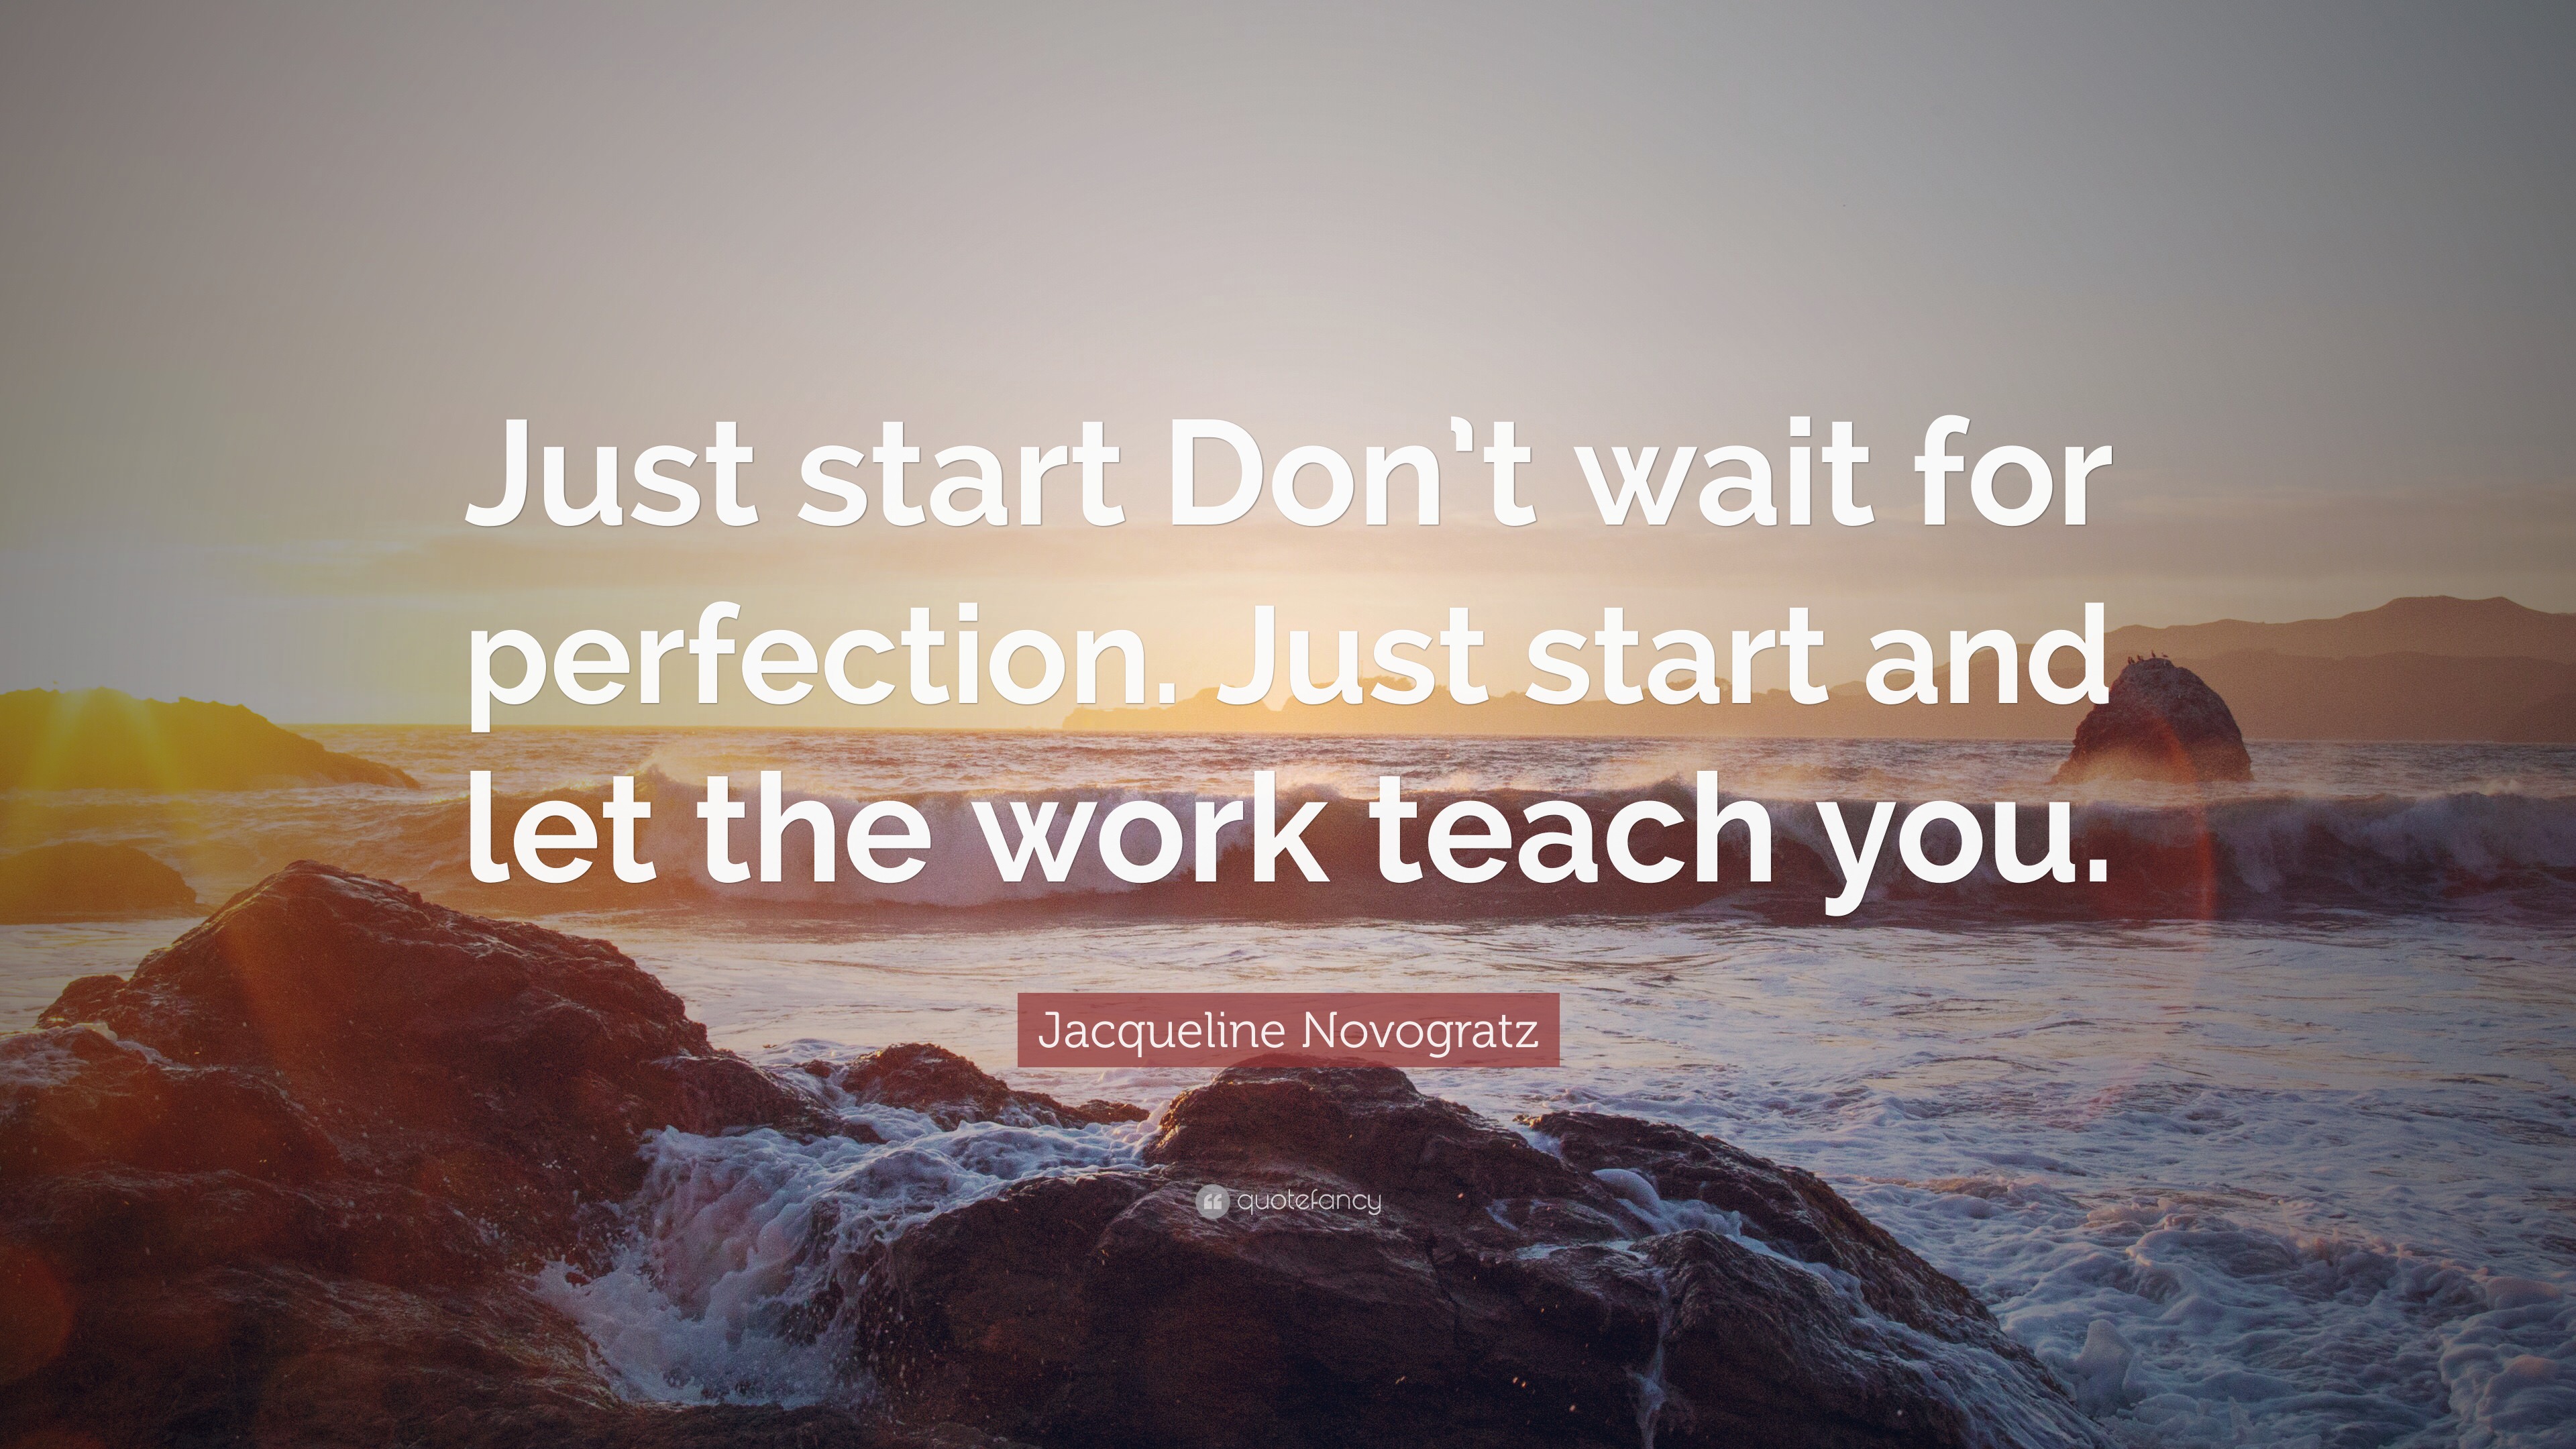 Jacqueline Novogratz Quote: “Just start Don’t wait for perfection. Just